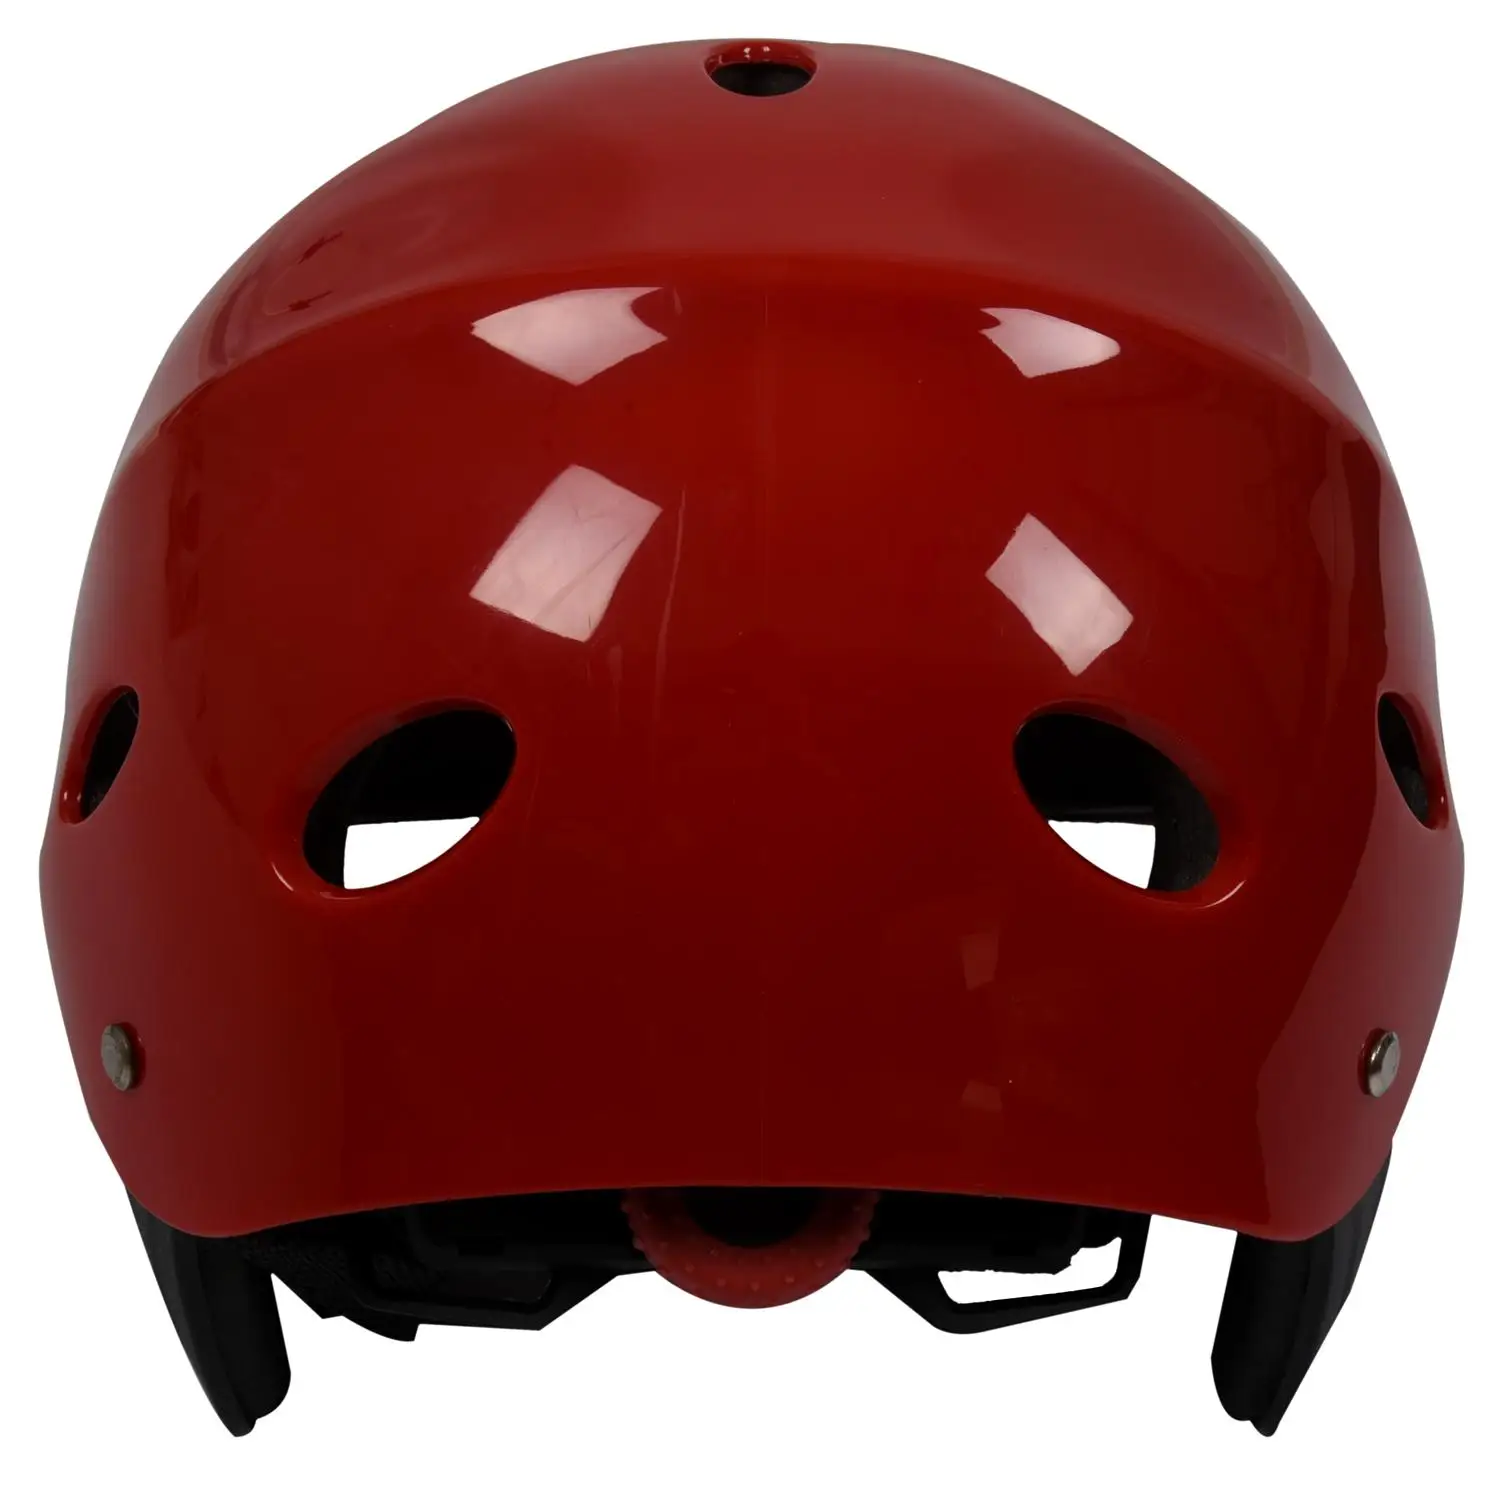 Защитный шлем с 11 дыхательными отверстиями для водных видов спорта Каяк Каноэ Гребля для серфинга - Красный - 0